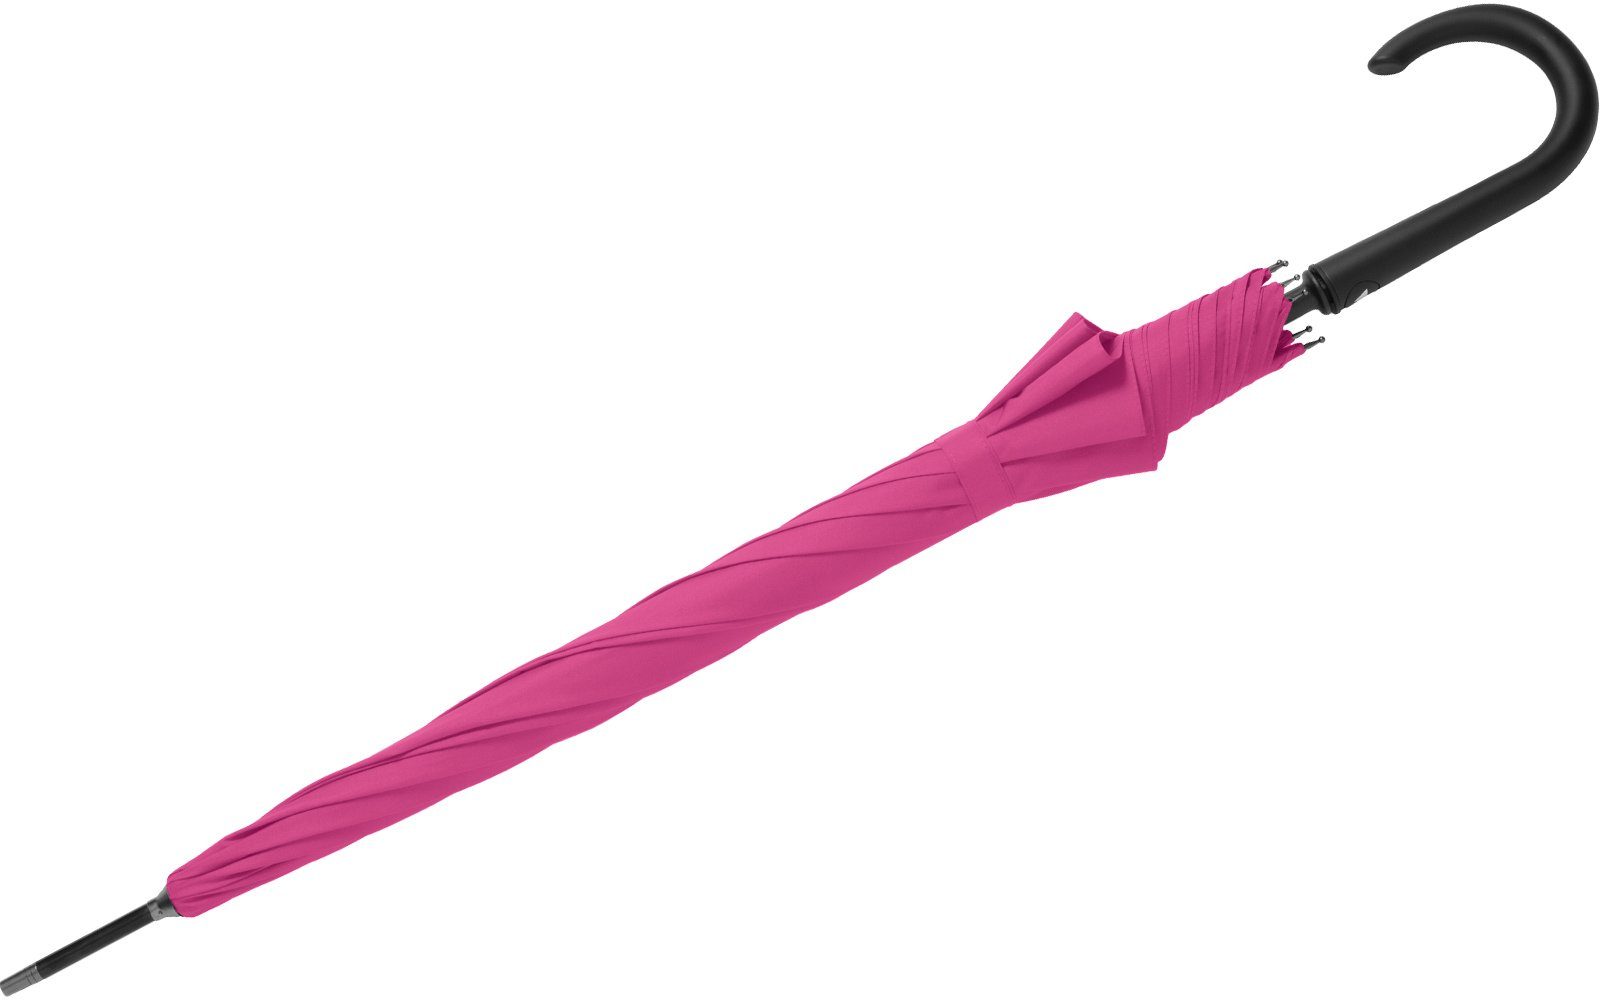 großer RS-Versand pink mit Langregenschirm Auslöseknopf Stahl-Fiberglas-Gestell, integrierter Auf-Automatik, Regenschirm stabiler